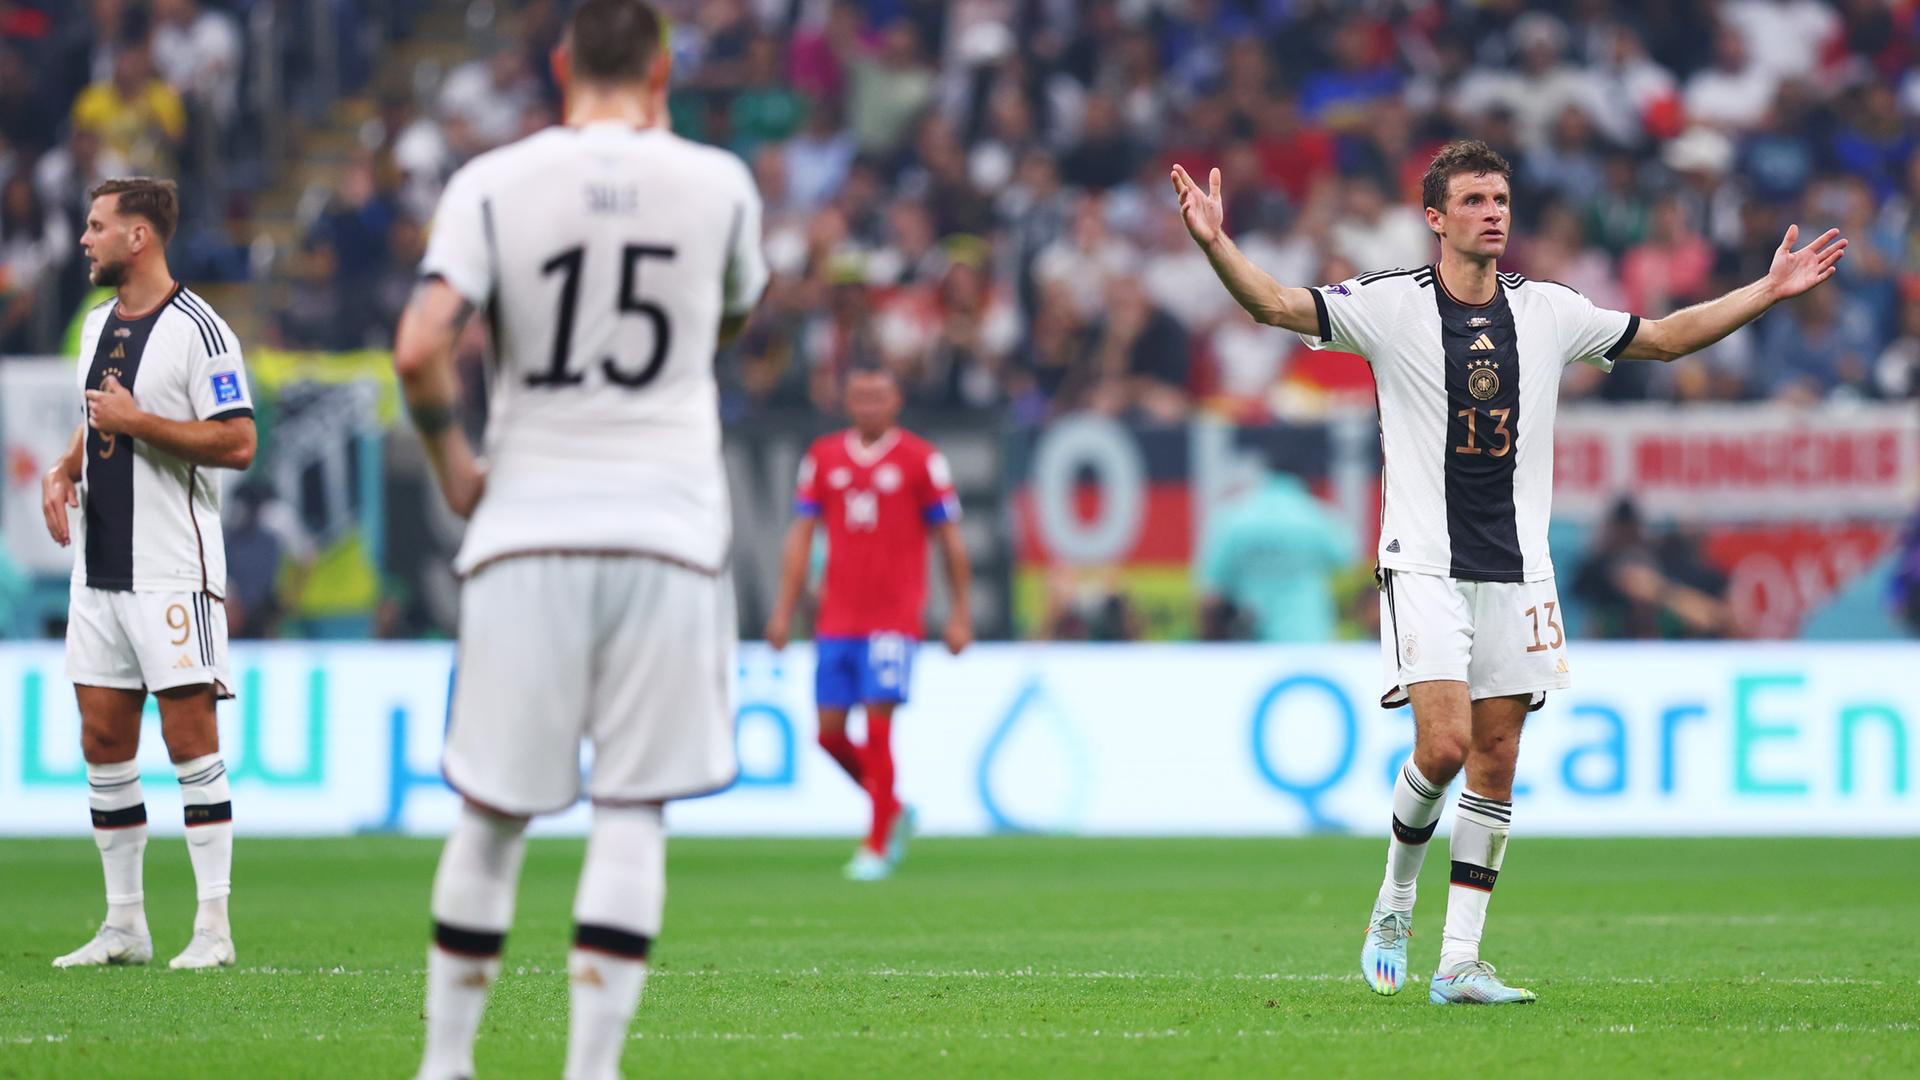 Der deutsche Fußball-Spieler Thomas Müller breitet die Arme aus. Costa Rica hatte 1 Tor geschossen. 